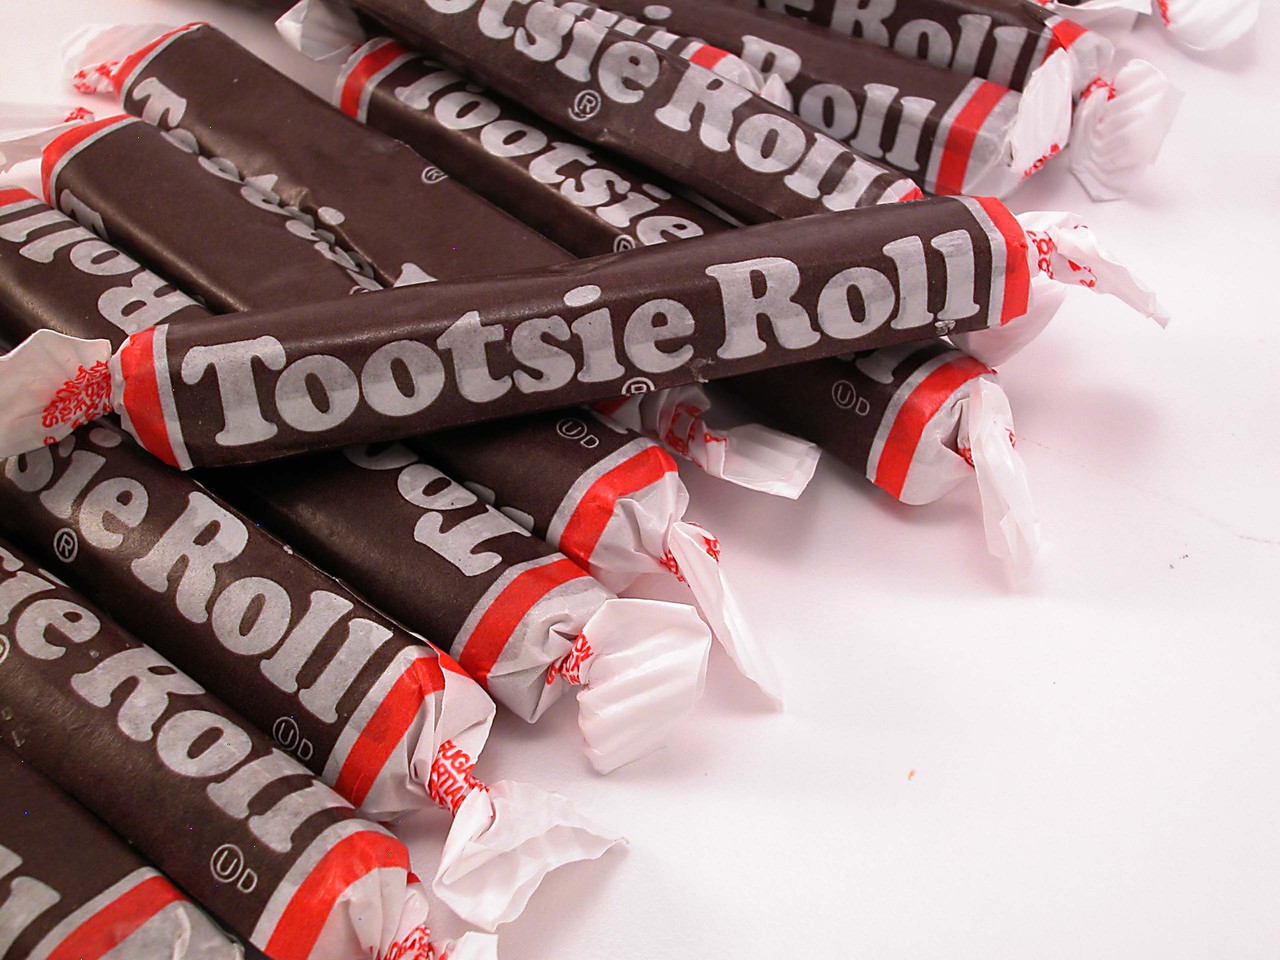 Káº*t quáº £ hÃ ¬ nh áº £ nh cho Tootsie Roll.